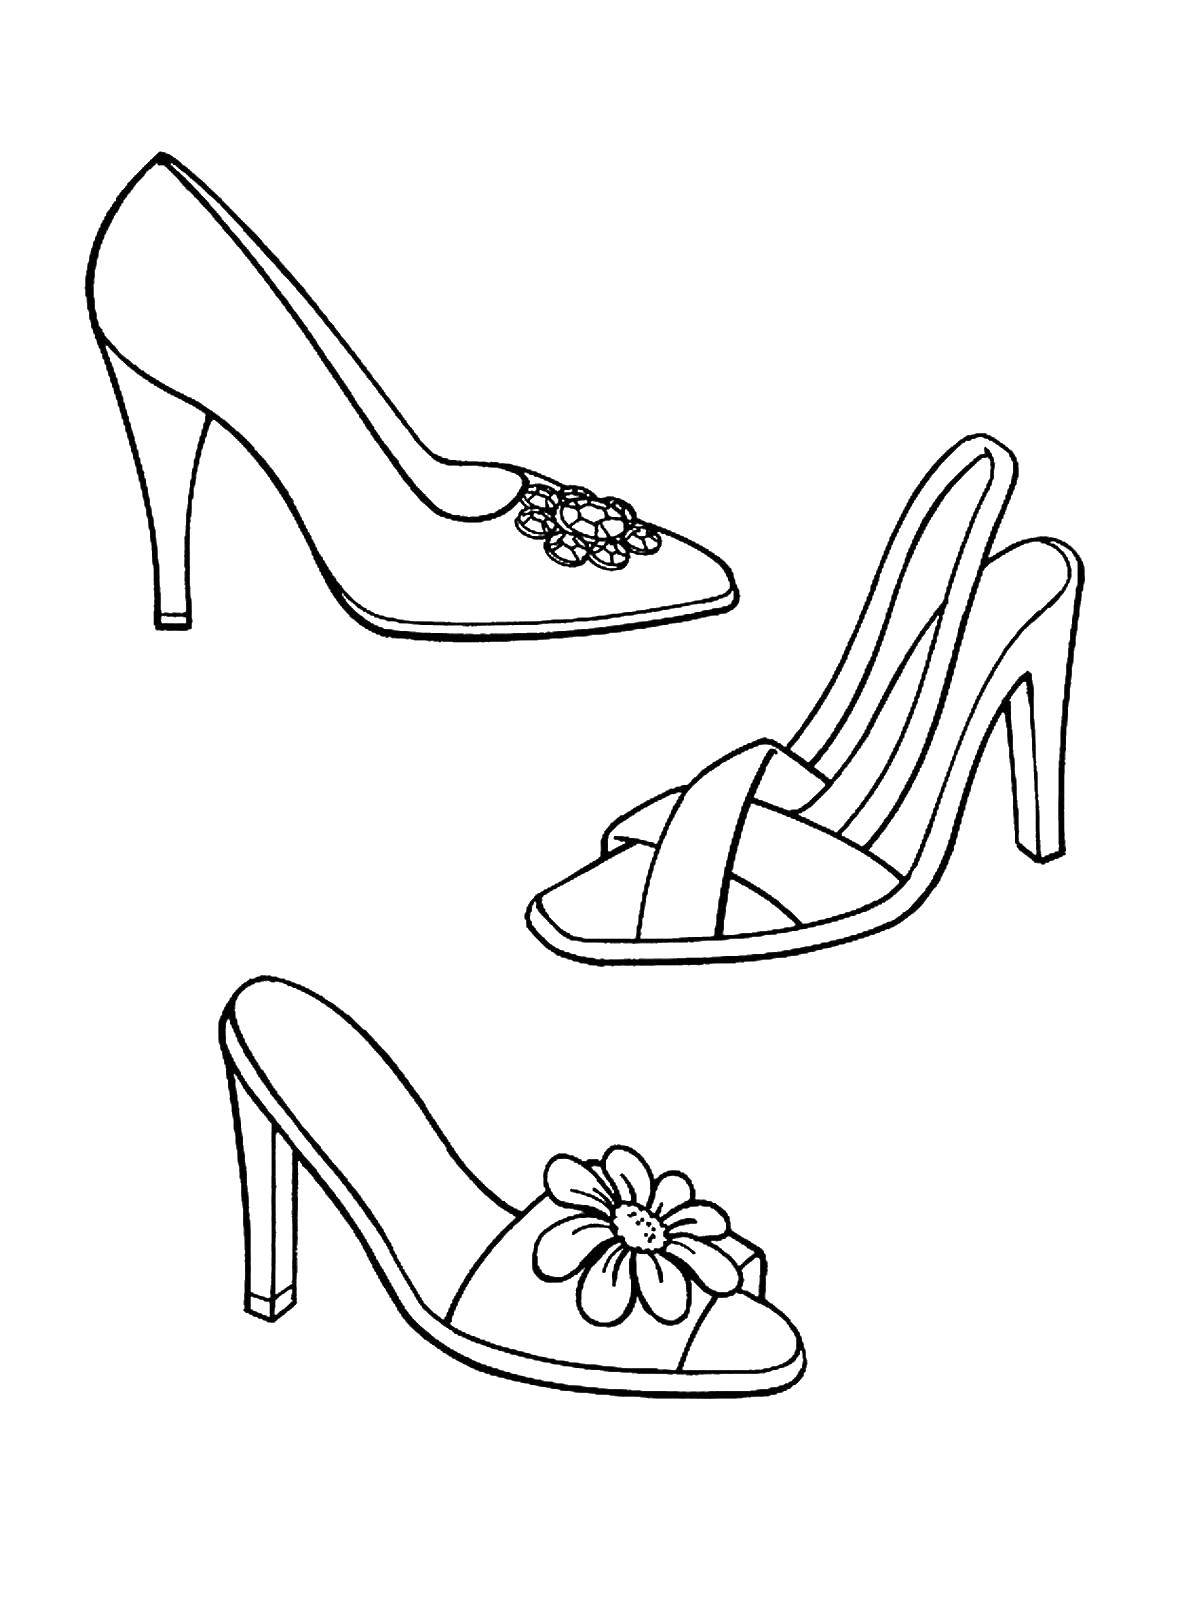 Coloring Женские туфли и босоножки. Category одежда. Tags:  Одежда, обувь, туфли.